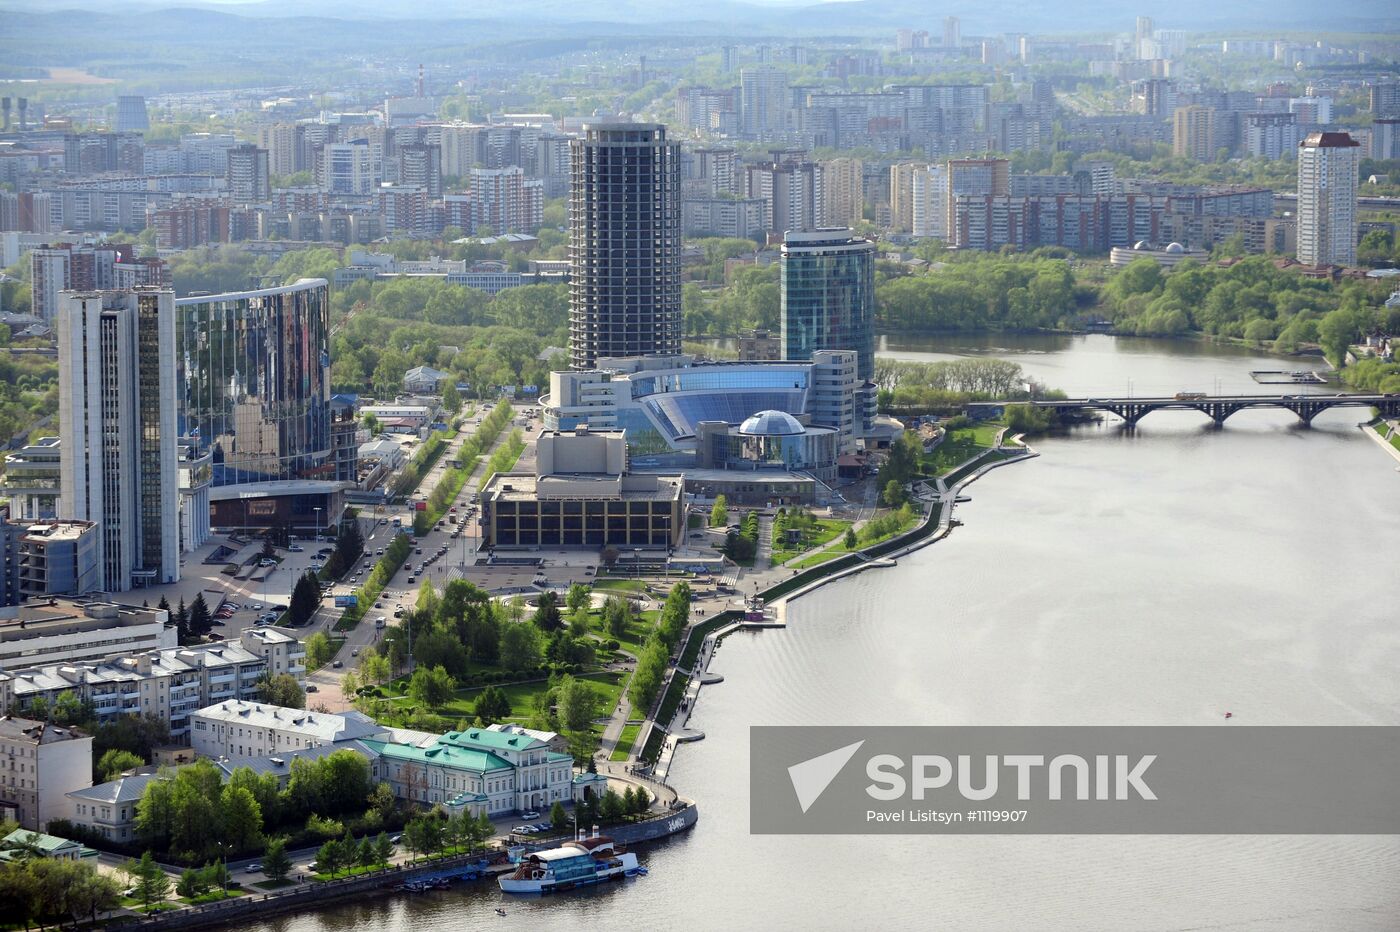 Observation deck of Vysotsky skyscraper in Yekaterinburg